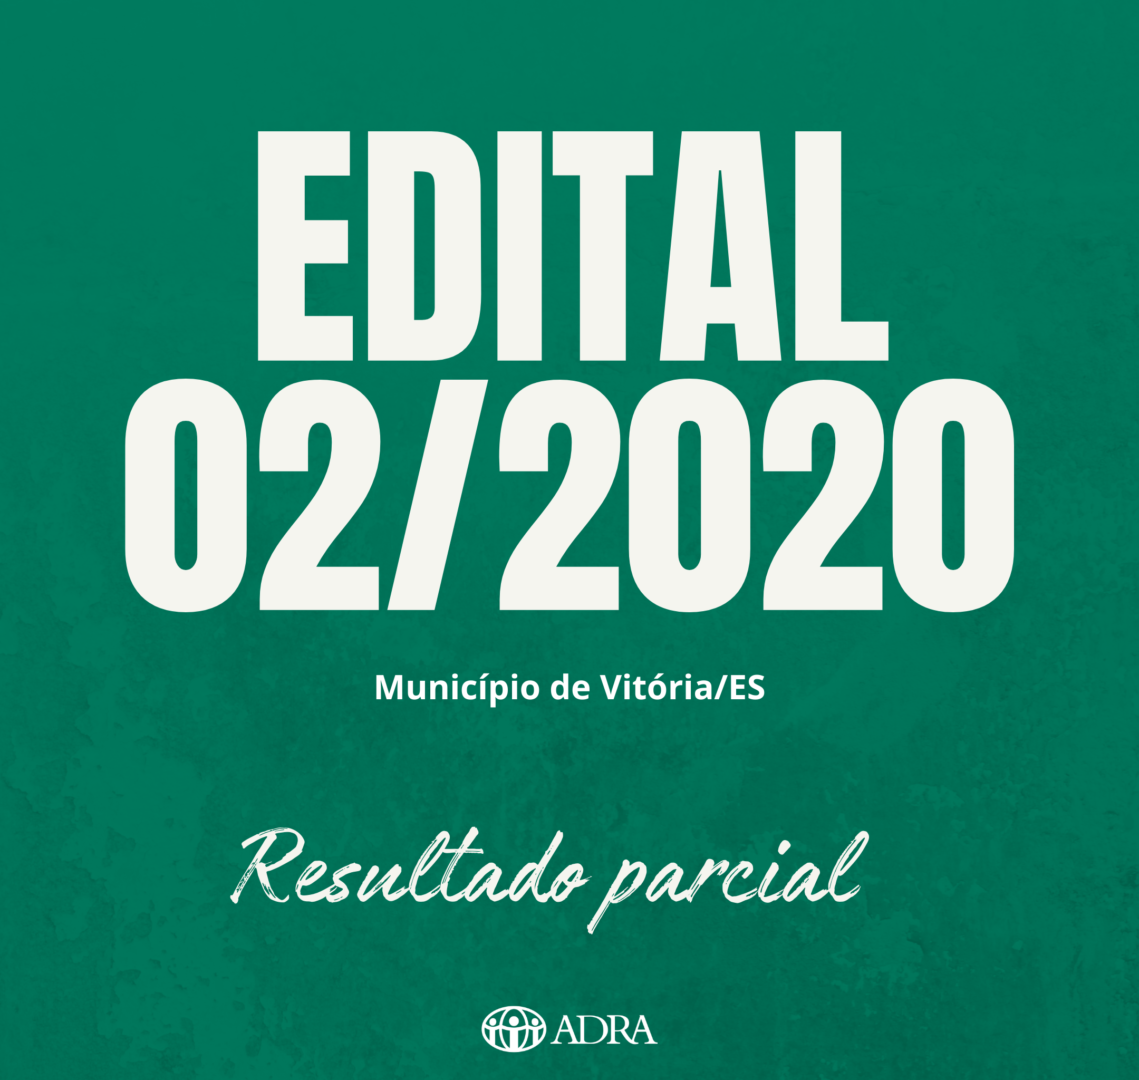 EDITAL nº 02/2020 – RESULTADO PARCIAL